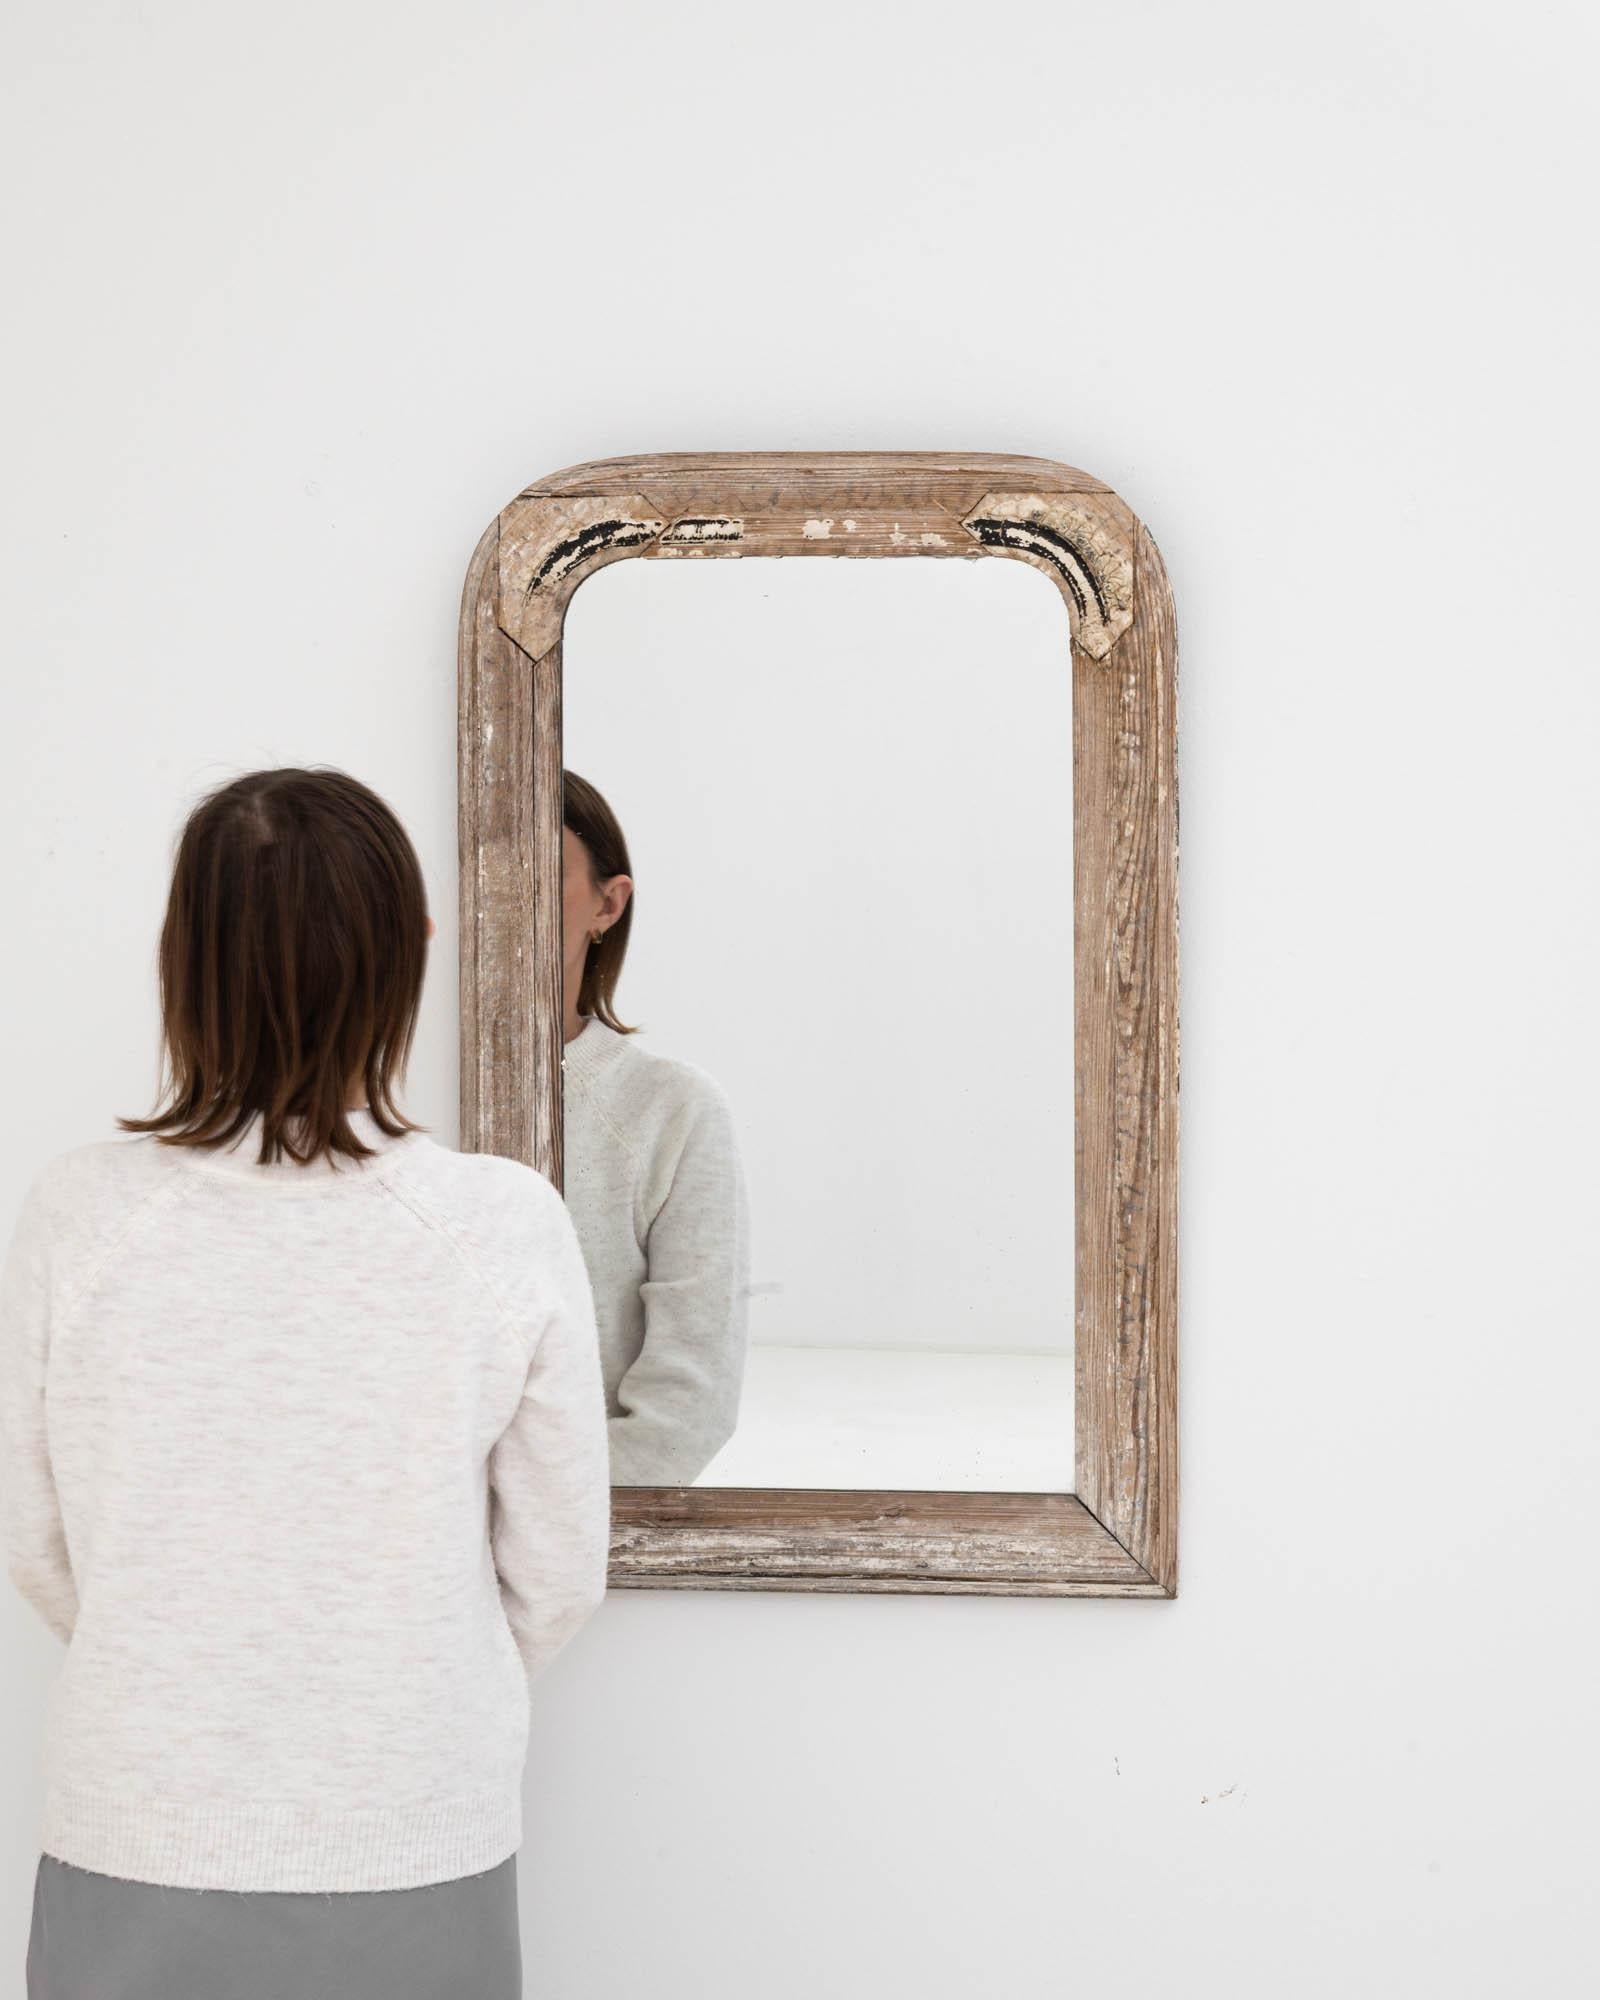 Remontez le temps et imprégnez votre espace d'un sens de l'histoire avec ce miroir en bois patiné français du XIXe siècle. Chaque coup d'œil offre plus qu'un simple reflet ; c'est un aperçu d'une époque révolue, encadré par la beauté altérée de ses